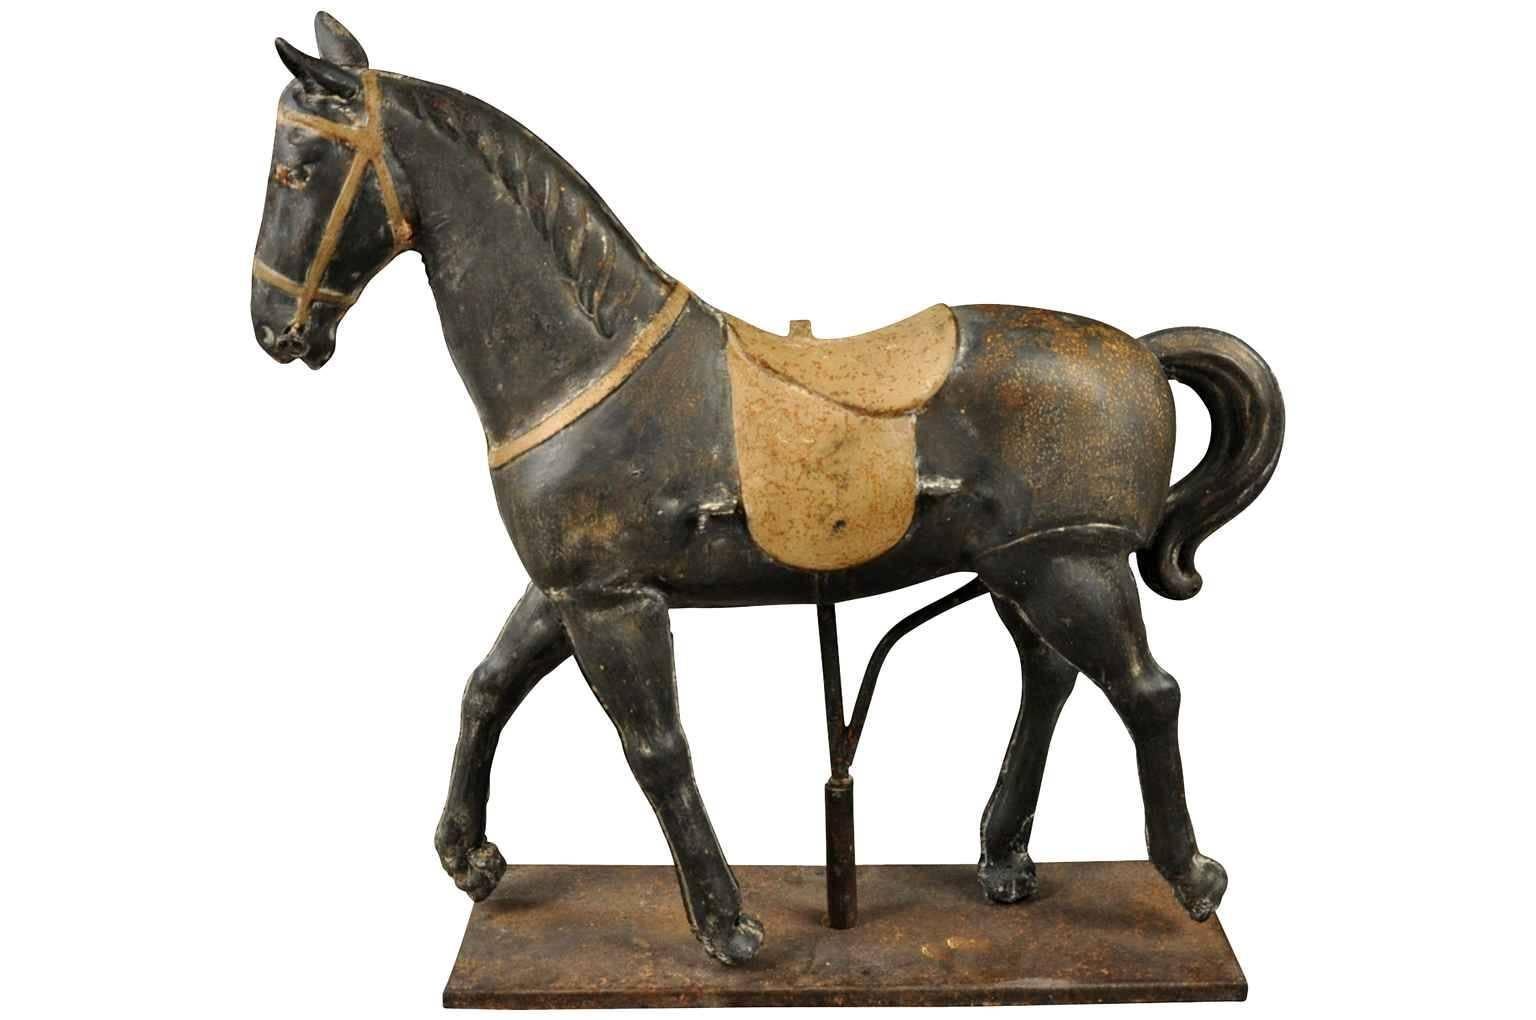 Ein entzückendes Spielzeugpferd aus lackiertem Metall aus dem späten 19. Jahrhundert. Ein charmanter Akzent für jeden Wohnbereich.